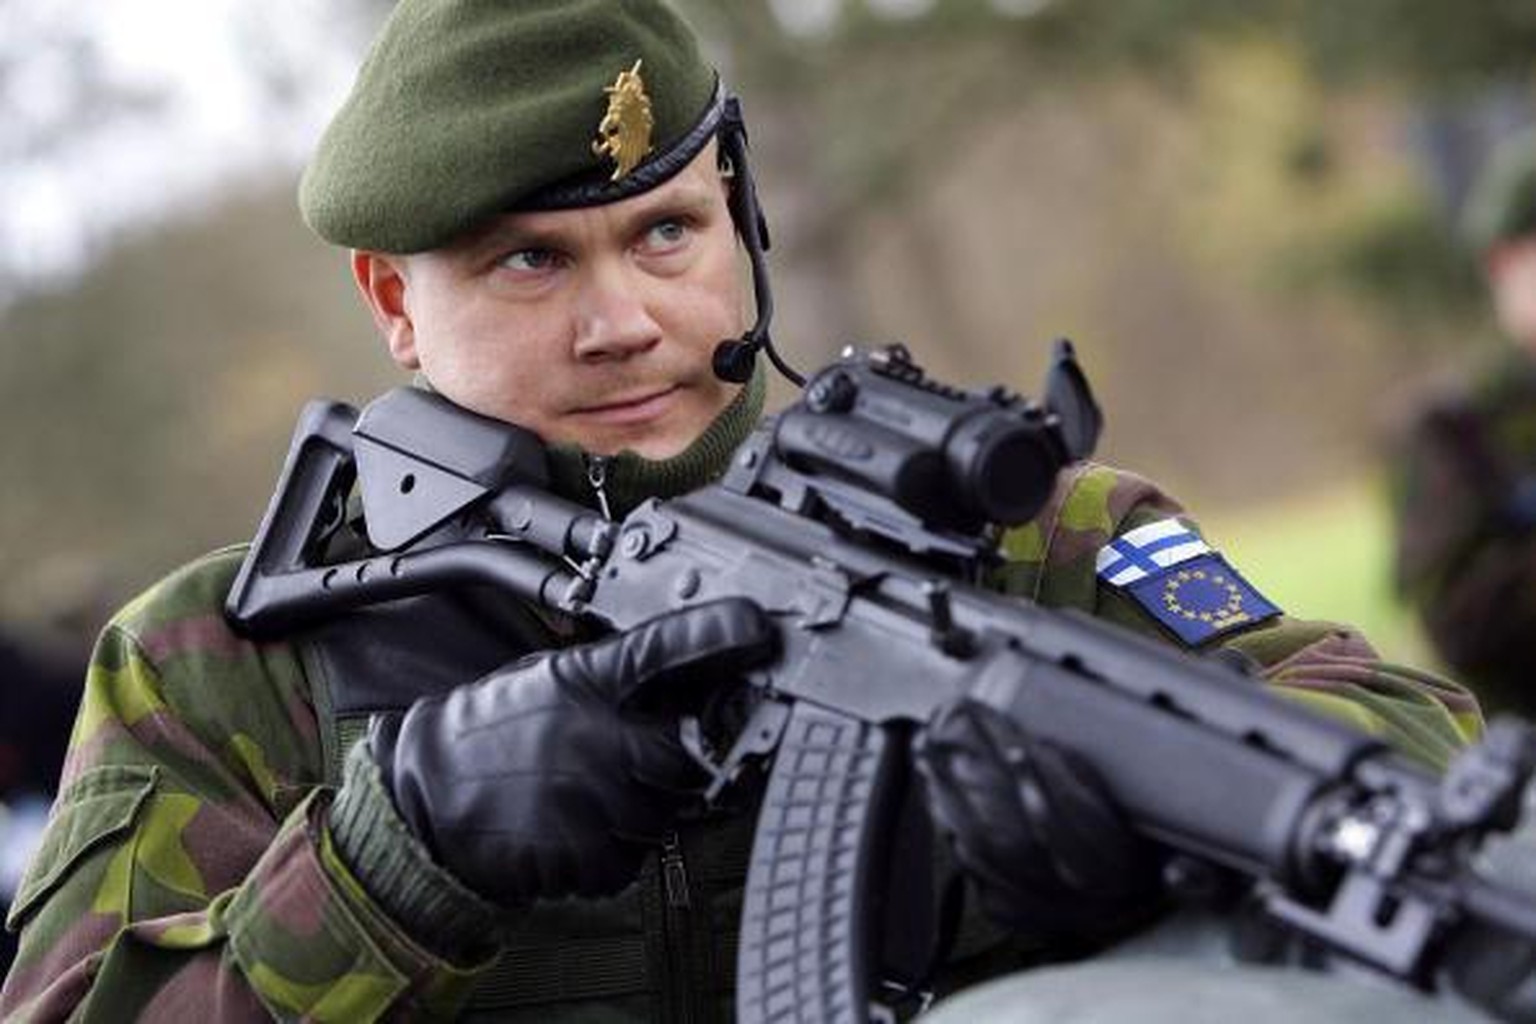 Un soldat finlandais lors d'un exercice militaire en Allemagne. L'adhésion à l'UE doit être suivie de l'adhésion à l'OTAN.